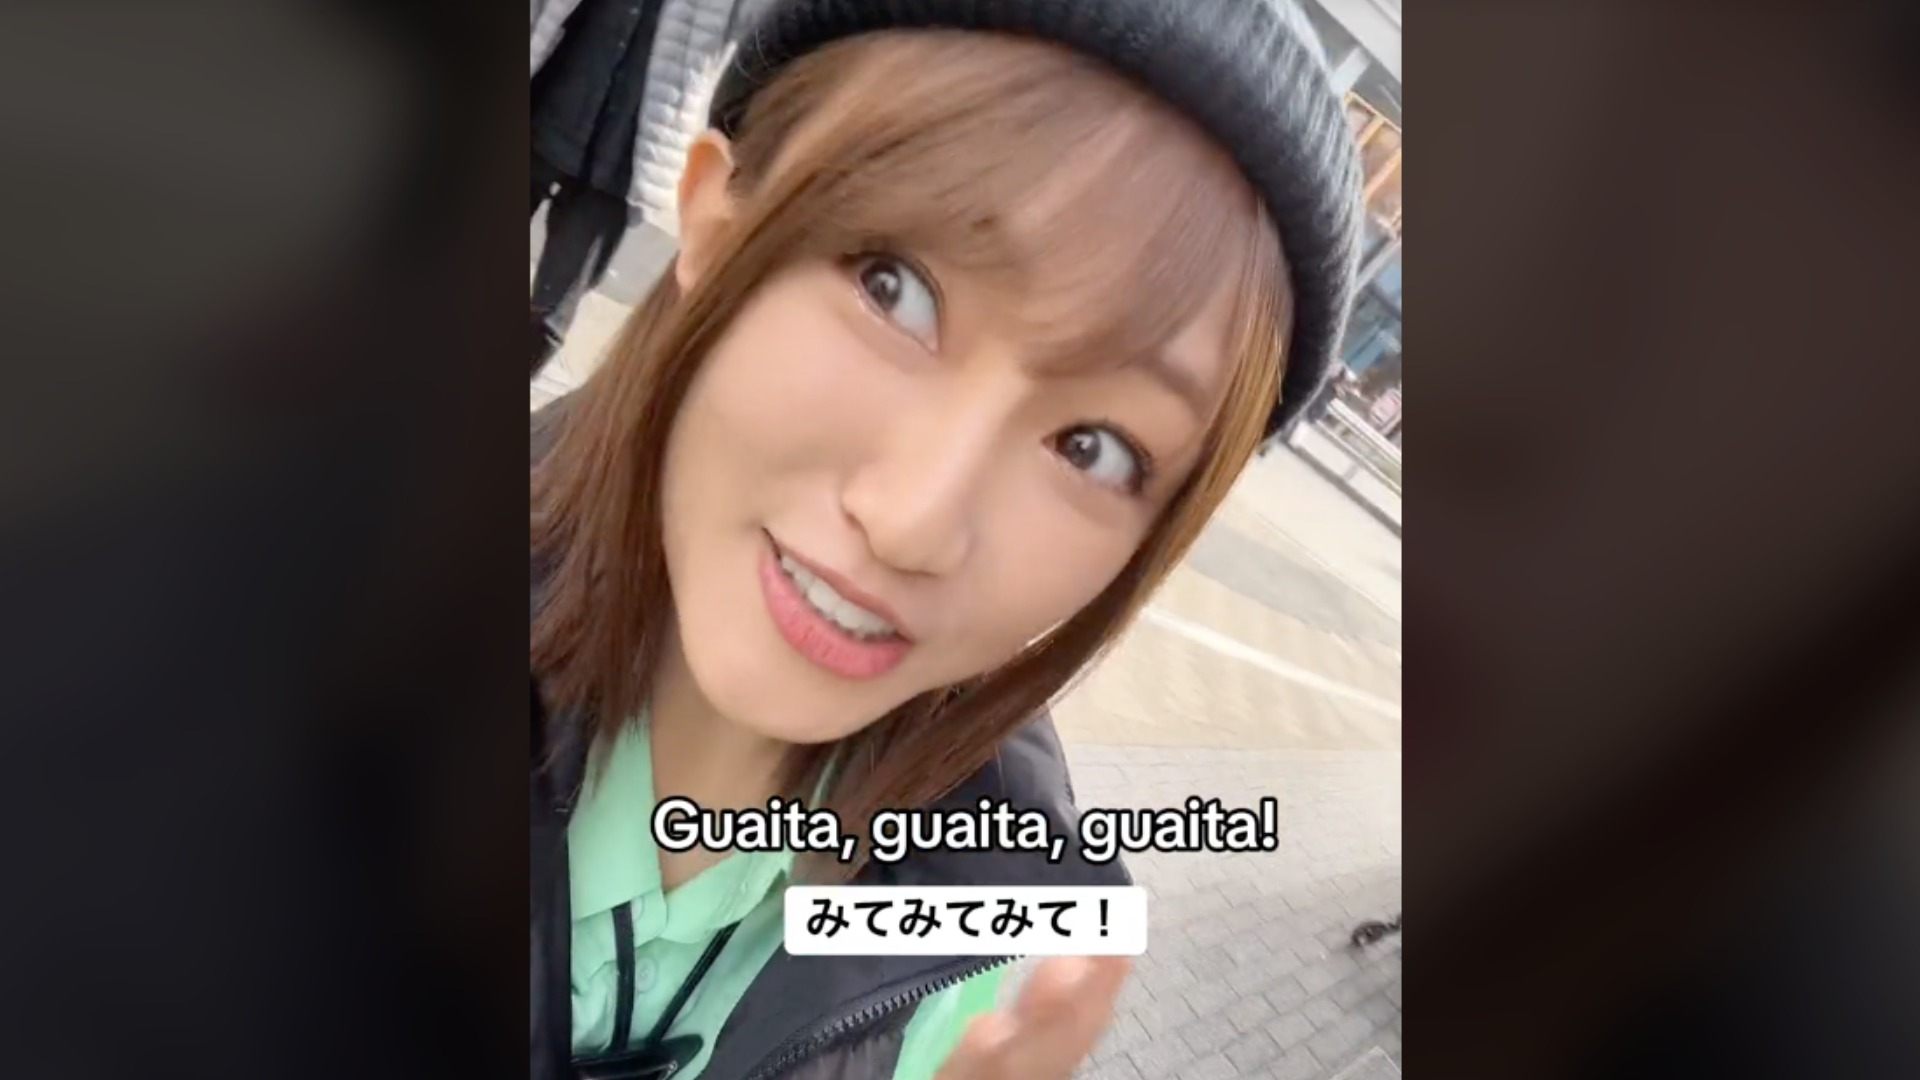 Aquesta noia japonesa troba plats catalans a Tòquio i es torna viral: "Hi ha menjar de Catalunya!"